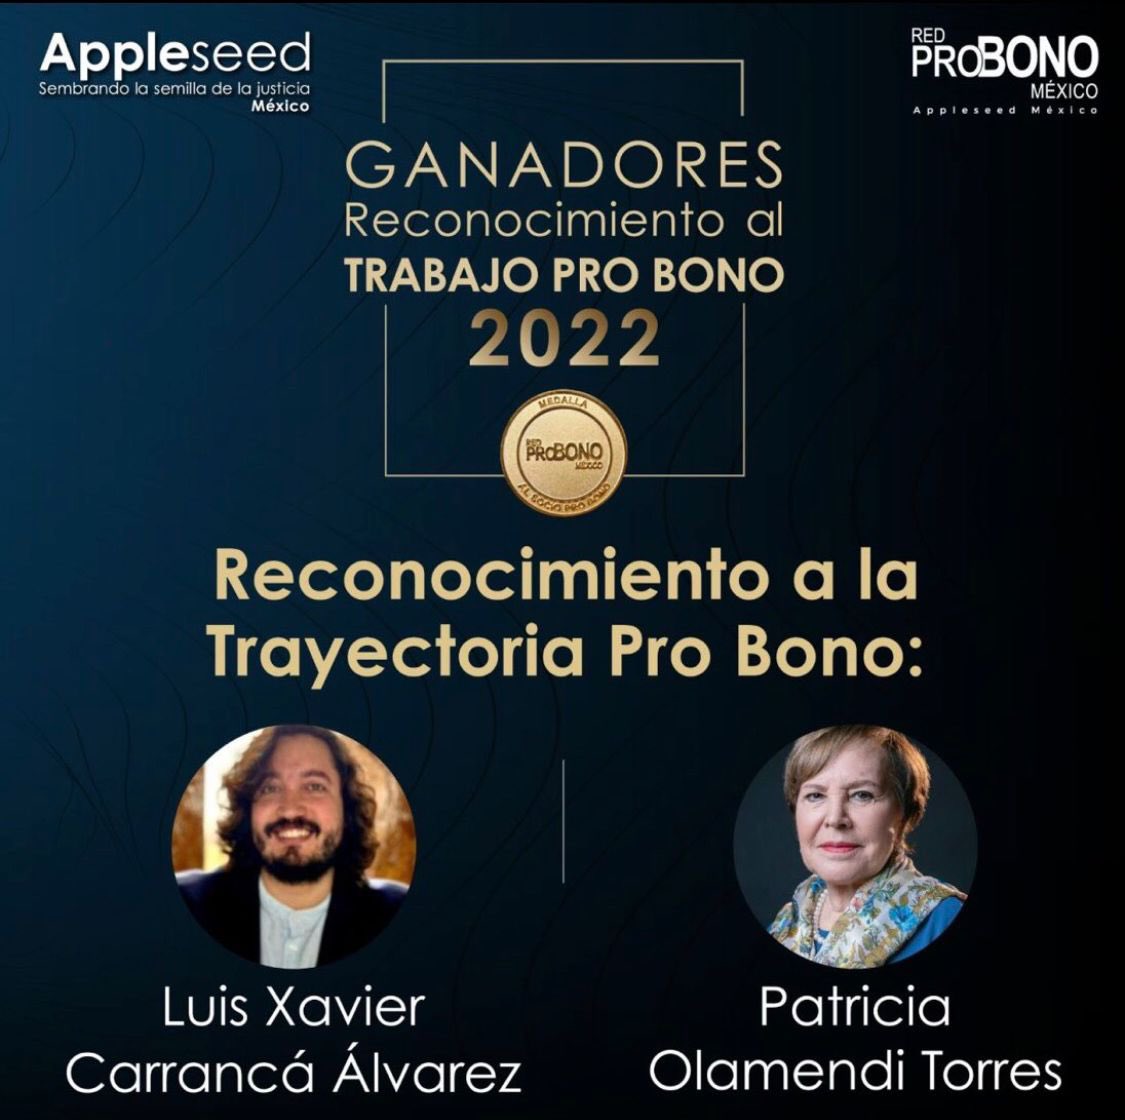 Felicitamos a nuestra querida colega, @PatyOlamendi, por haber recibido el Reconocimiento a la Trayectoria Pro Bono que otorga Appleseed México.